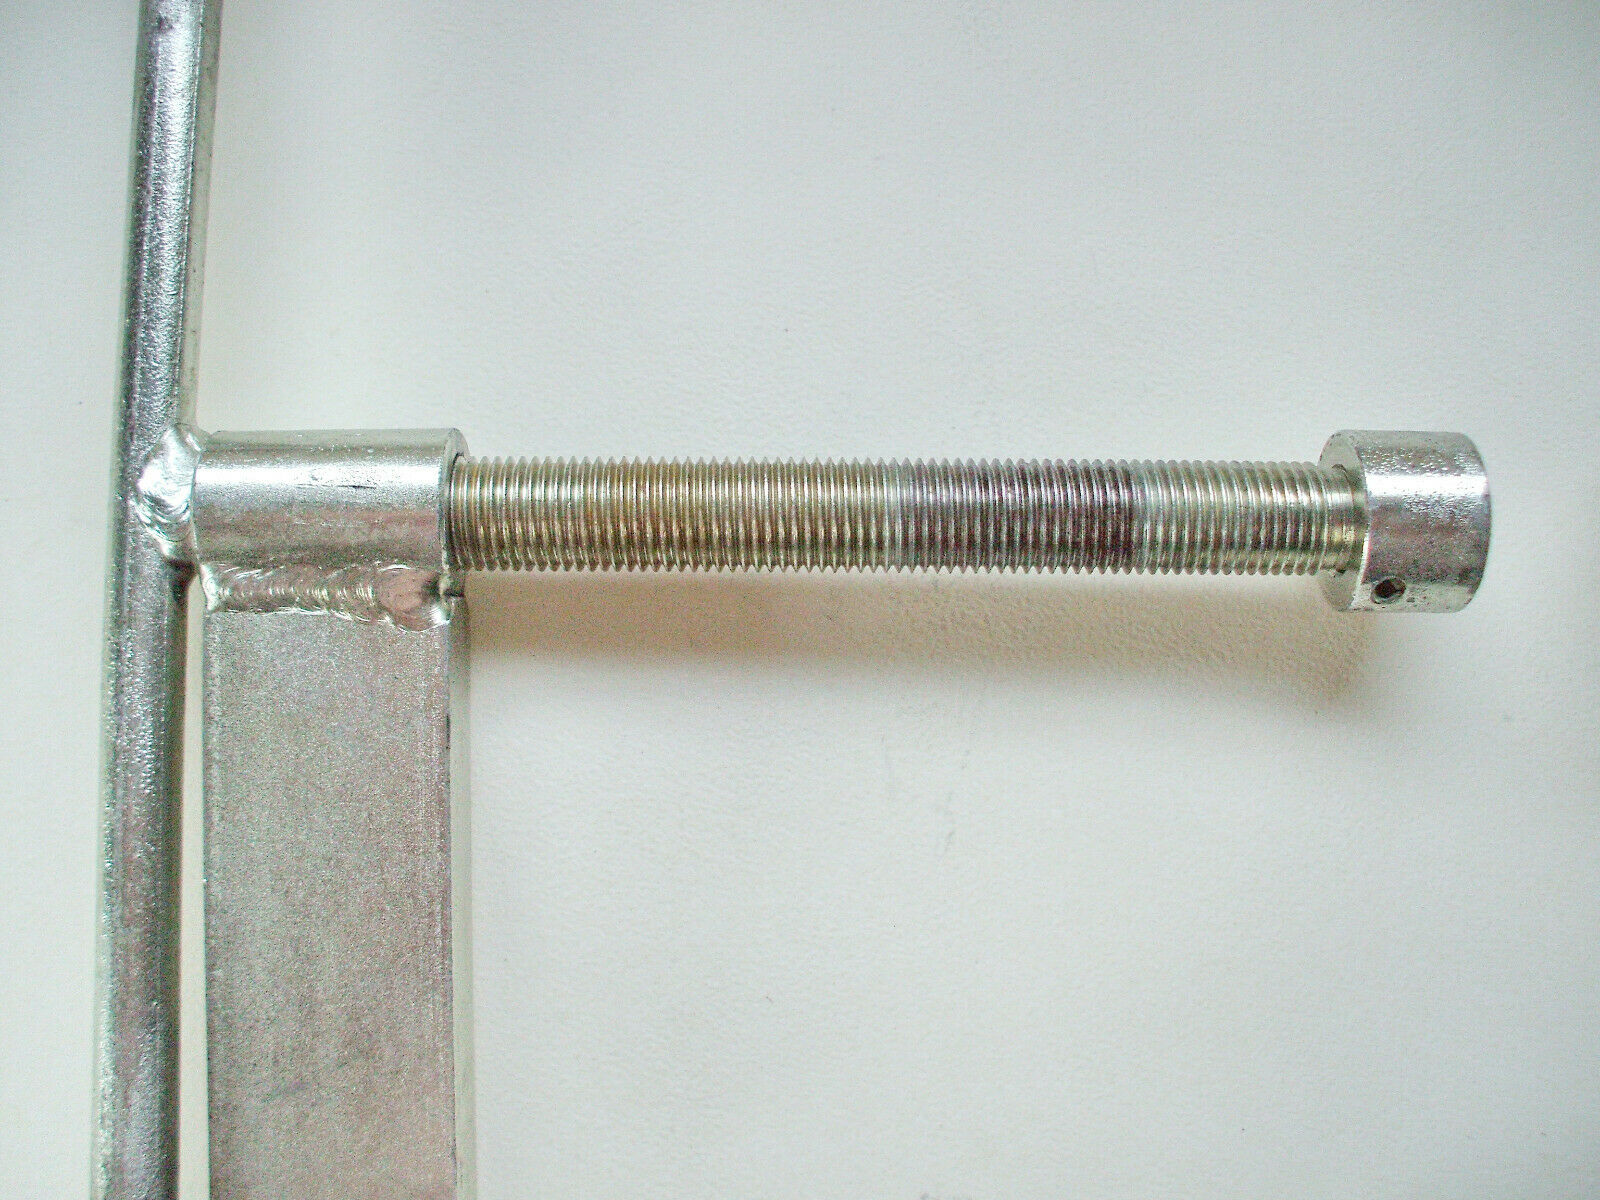 Moto Guzzi factory valve spring compressor tool.